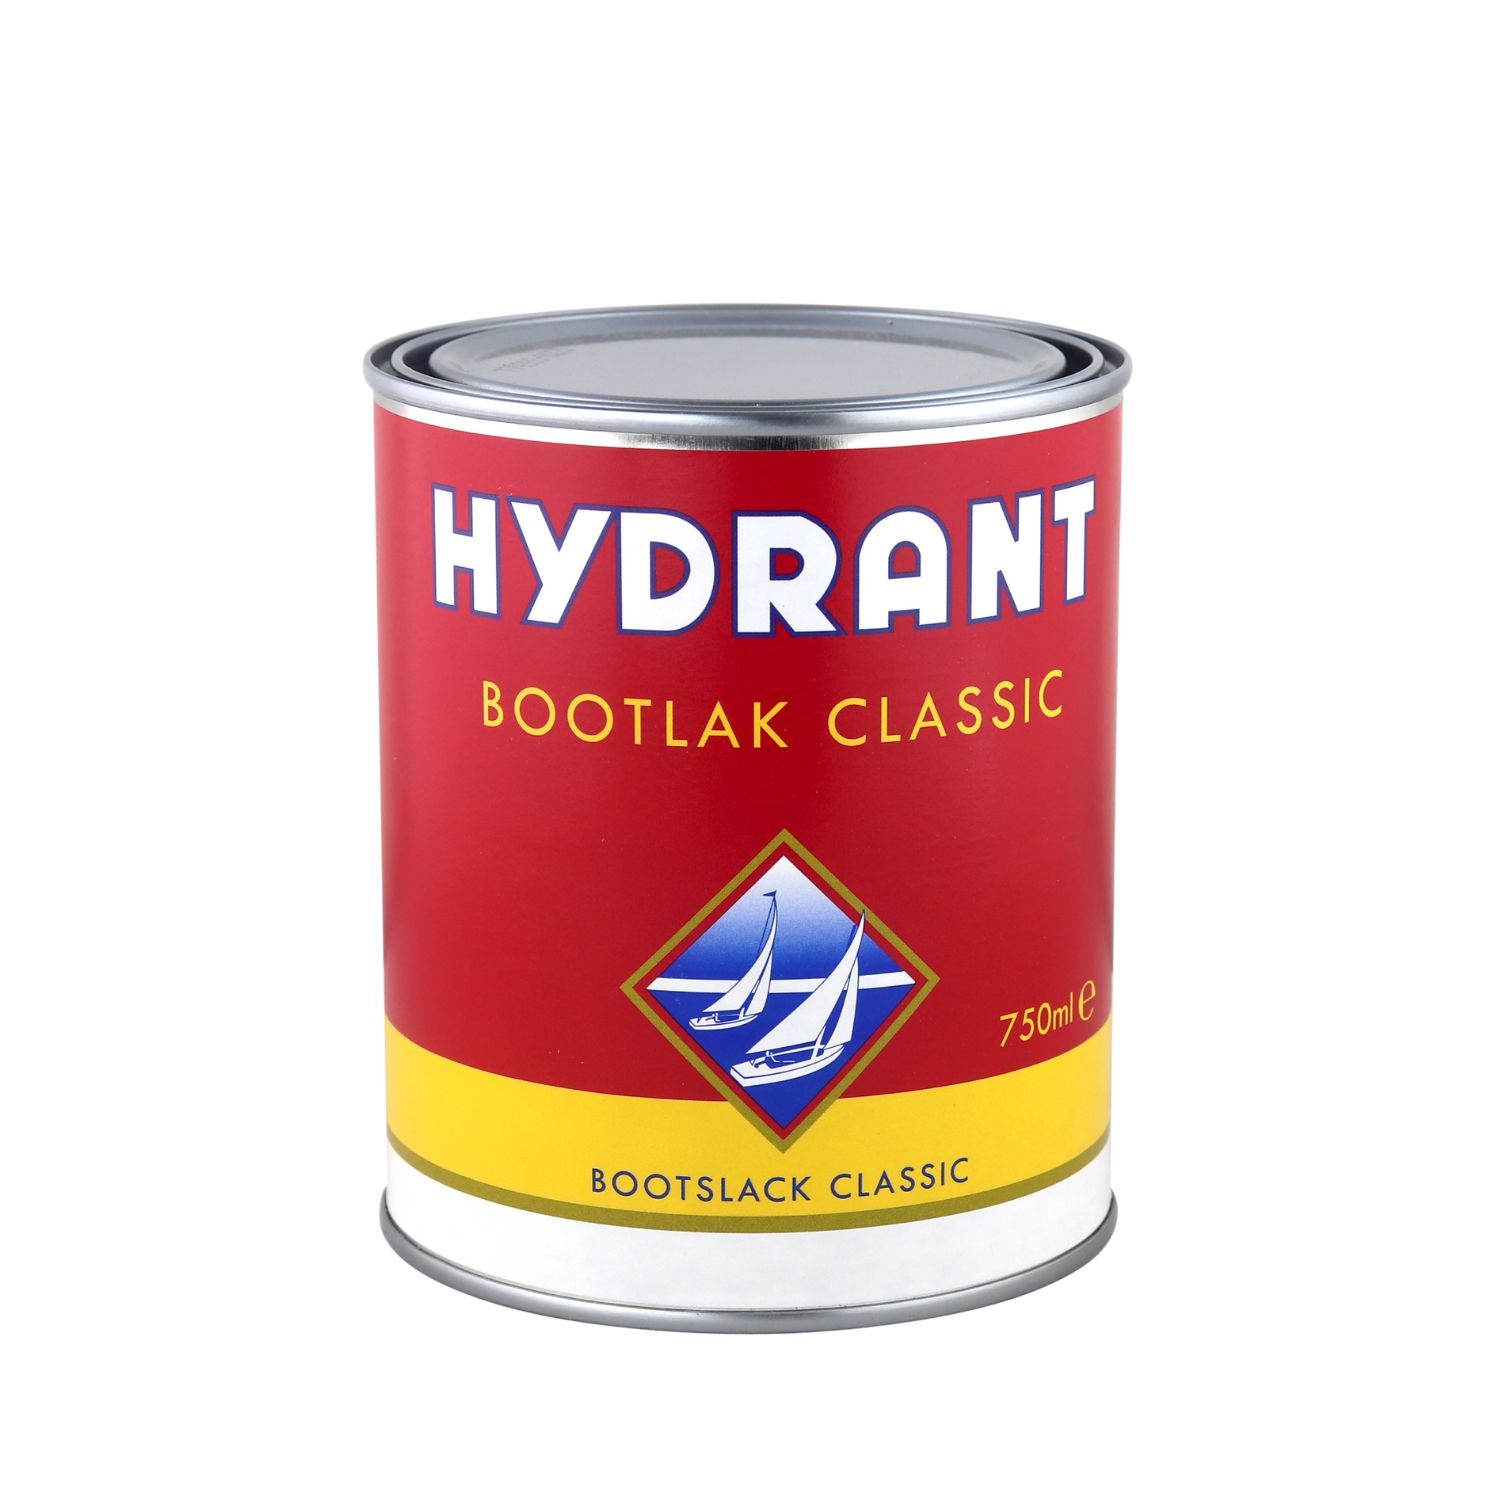 Hydrant bootlak classic blanke lak4